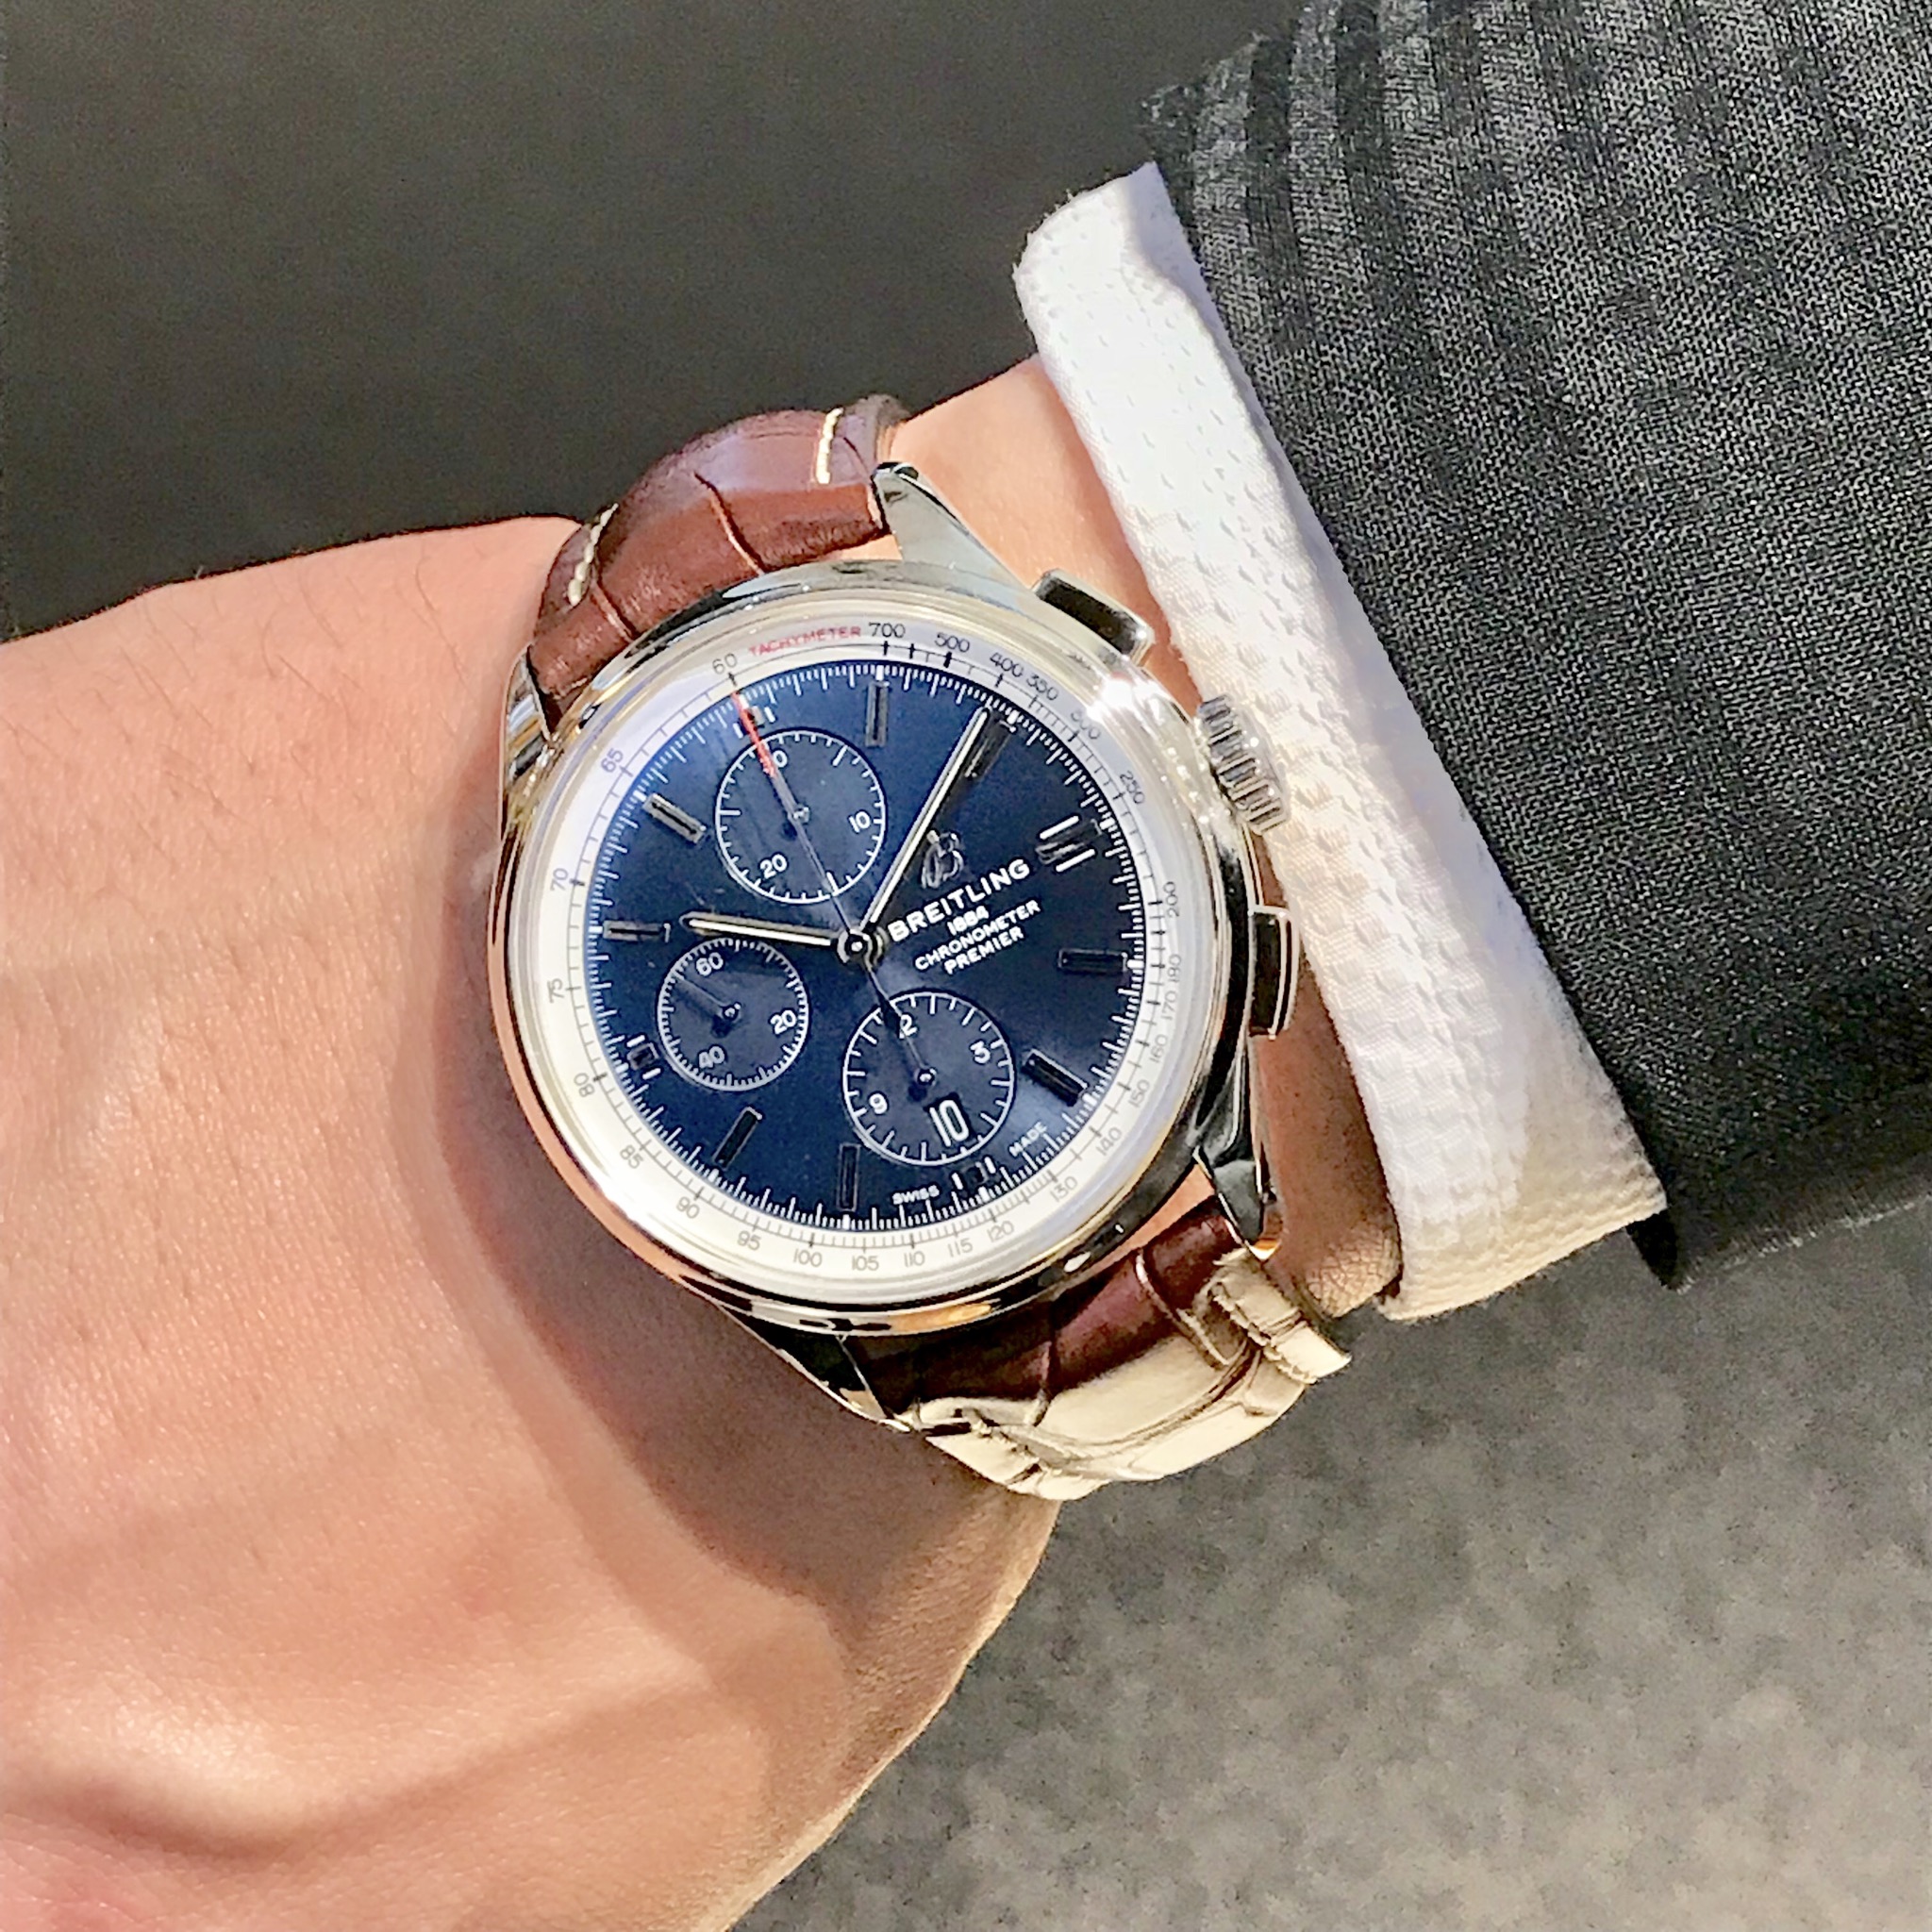 ブライトリング Breitling プレミエ クロノグラフ ブランド腕時計の正規販売店紹介サイトgressive グレッシブ